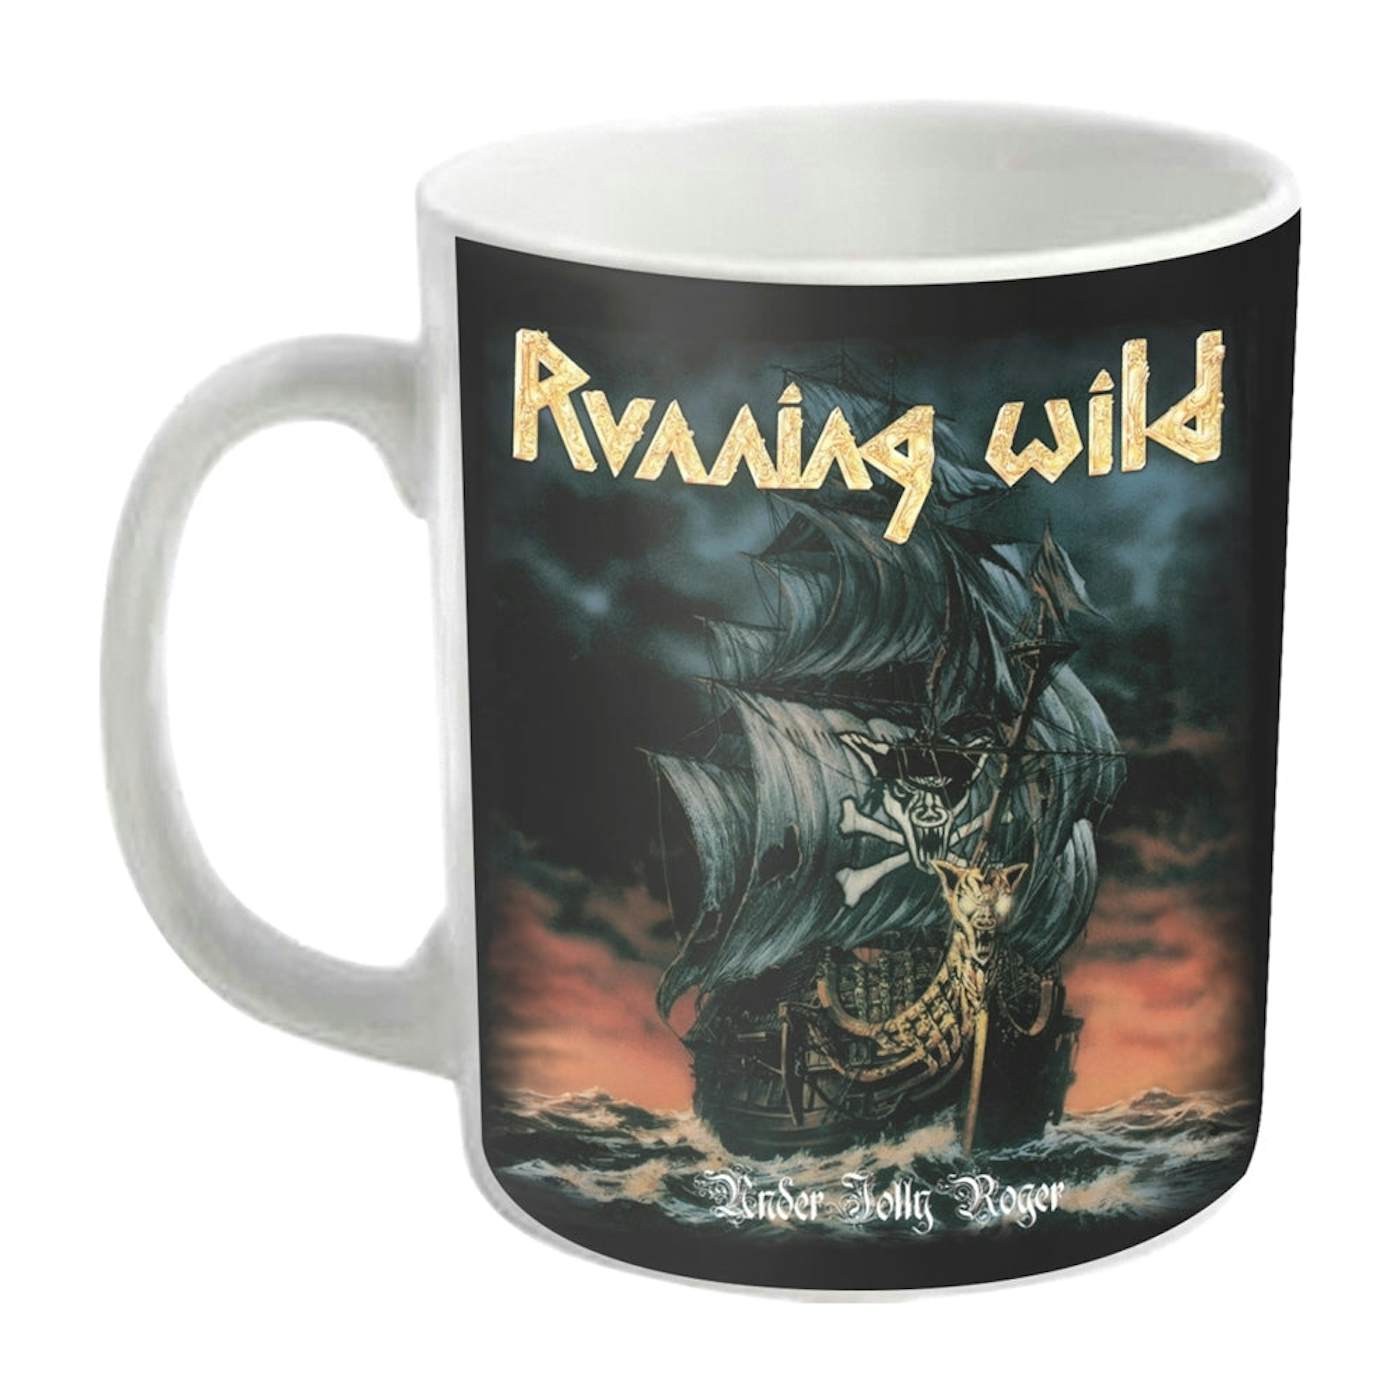 Running Wild Mug - Under Jolly Roger